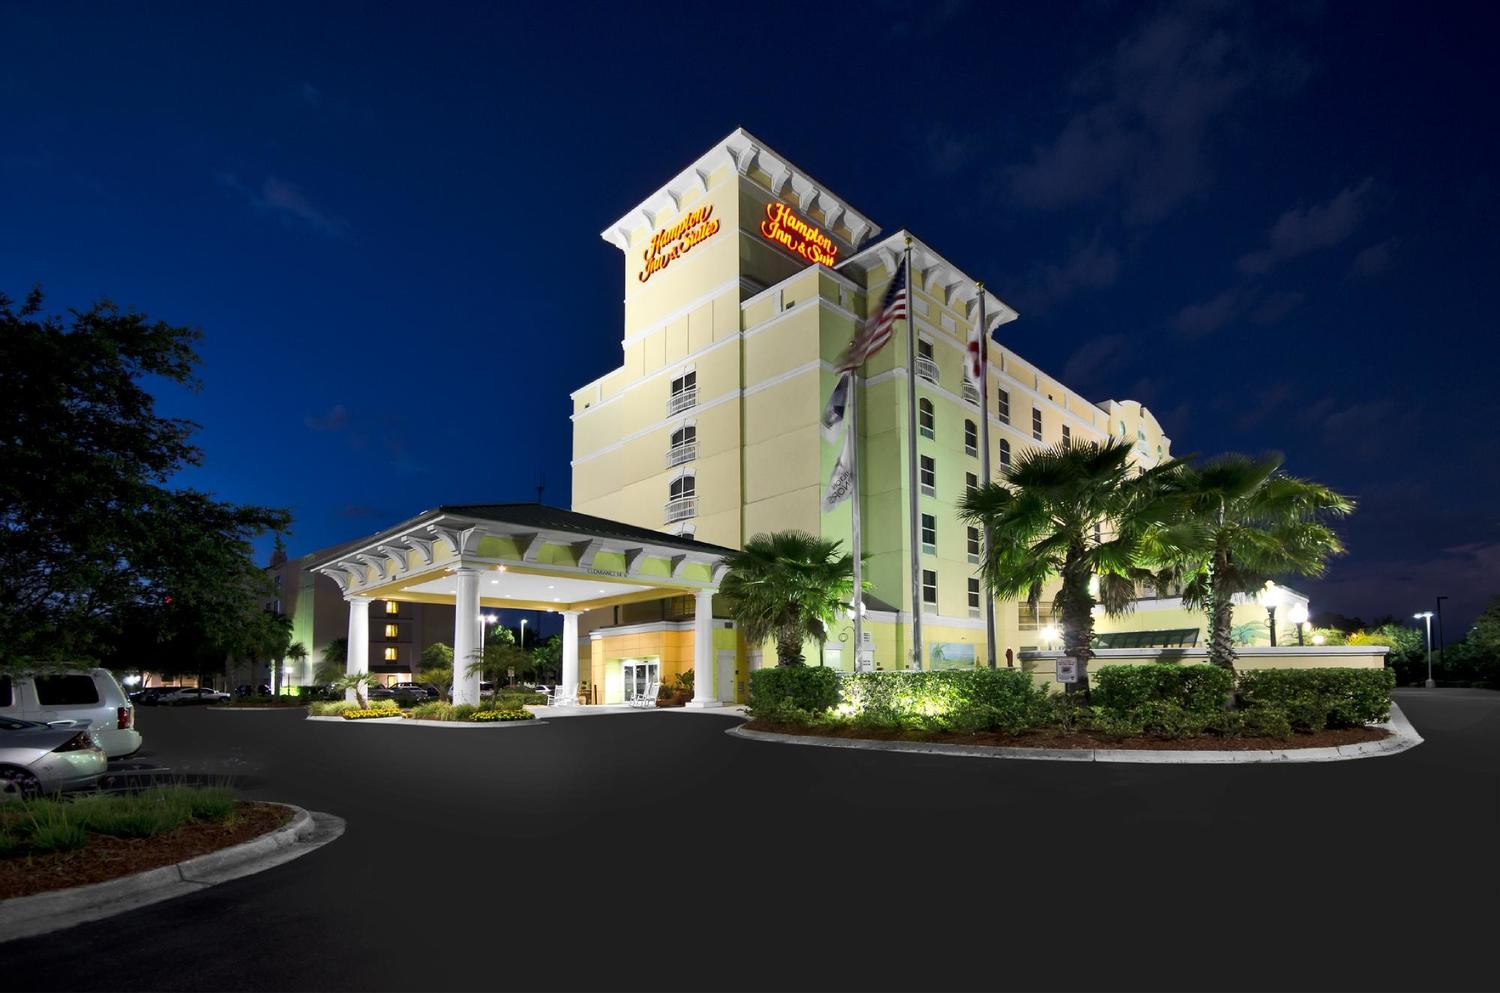 Hampton Inn & Suites Jacksonville Deerwood Park, Jacksonville, FL Jobs